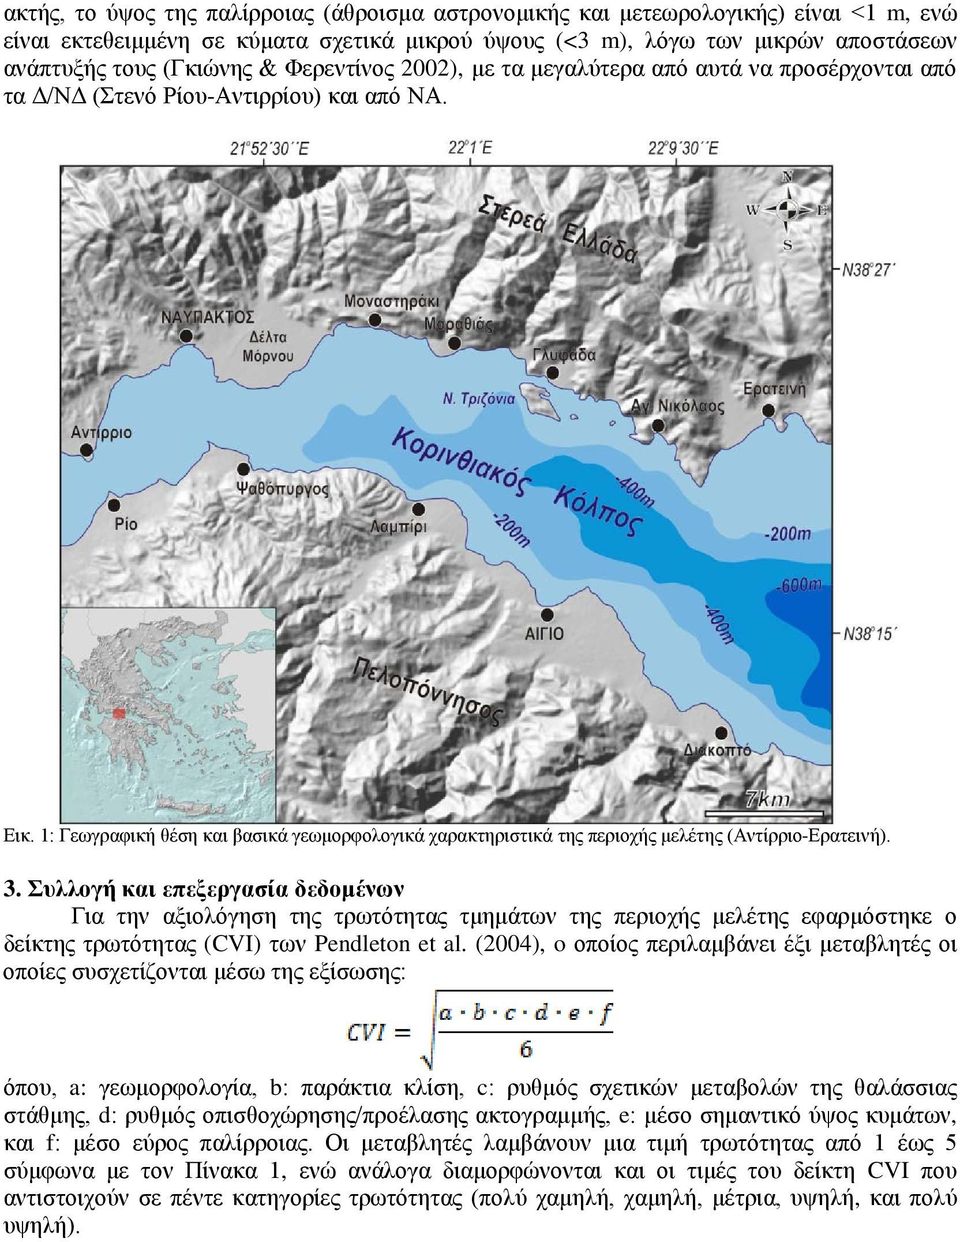 1: Γεωγραφική θέση και βασικά γεωμορφολογικά χαρακτηριστικά της περιοχής μελέτης (Αντίρριο-Ερατεινή). 3.